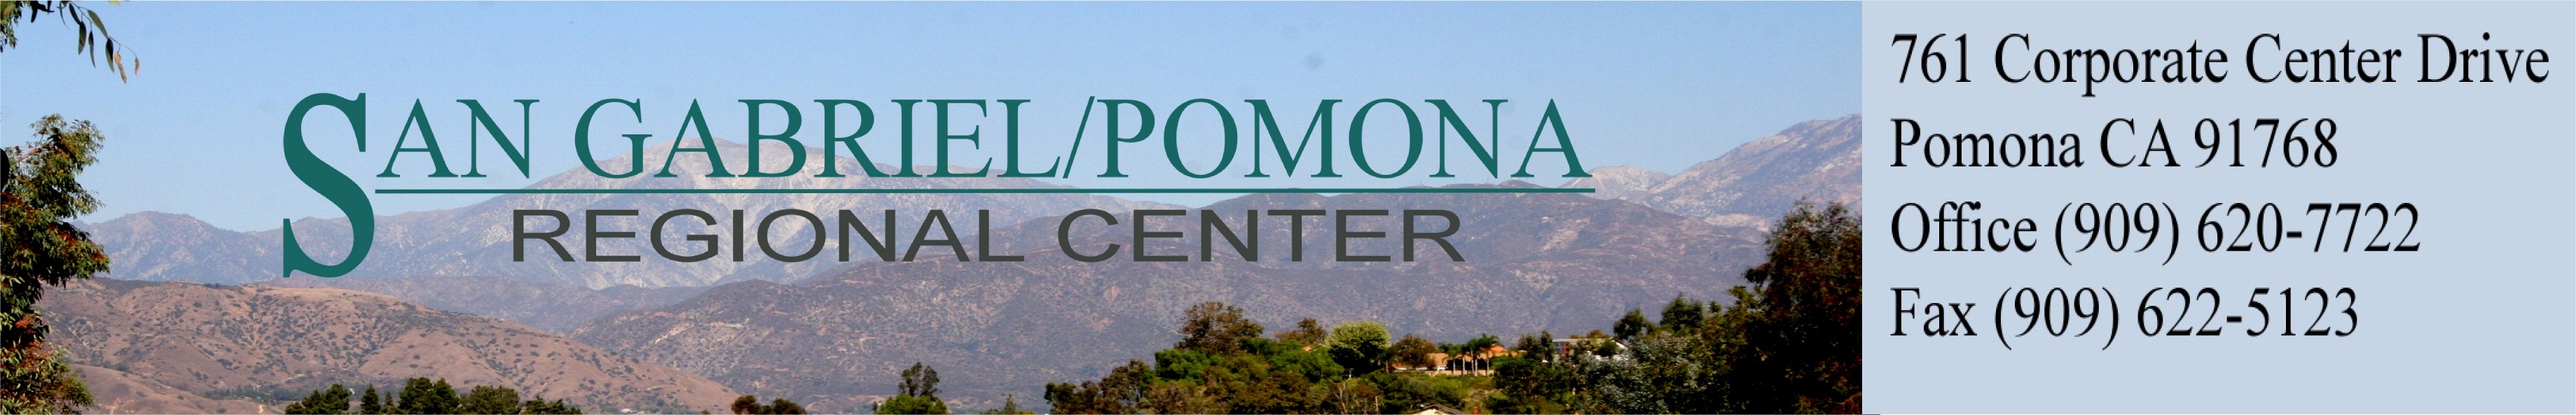 San Gabriel Pomona Regional Center